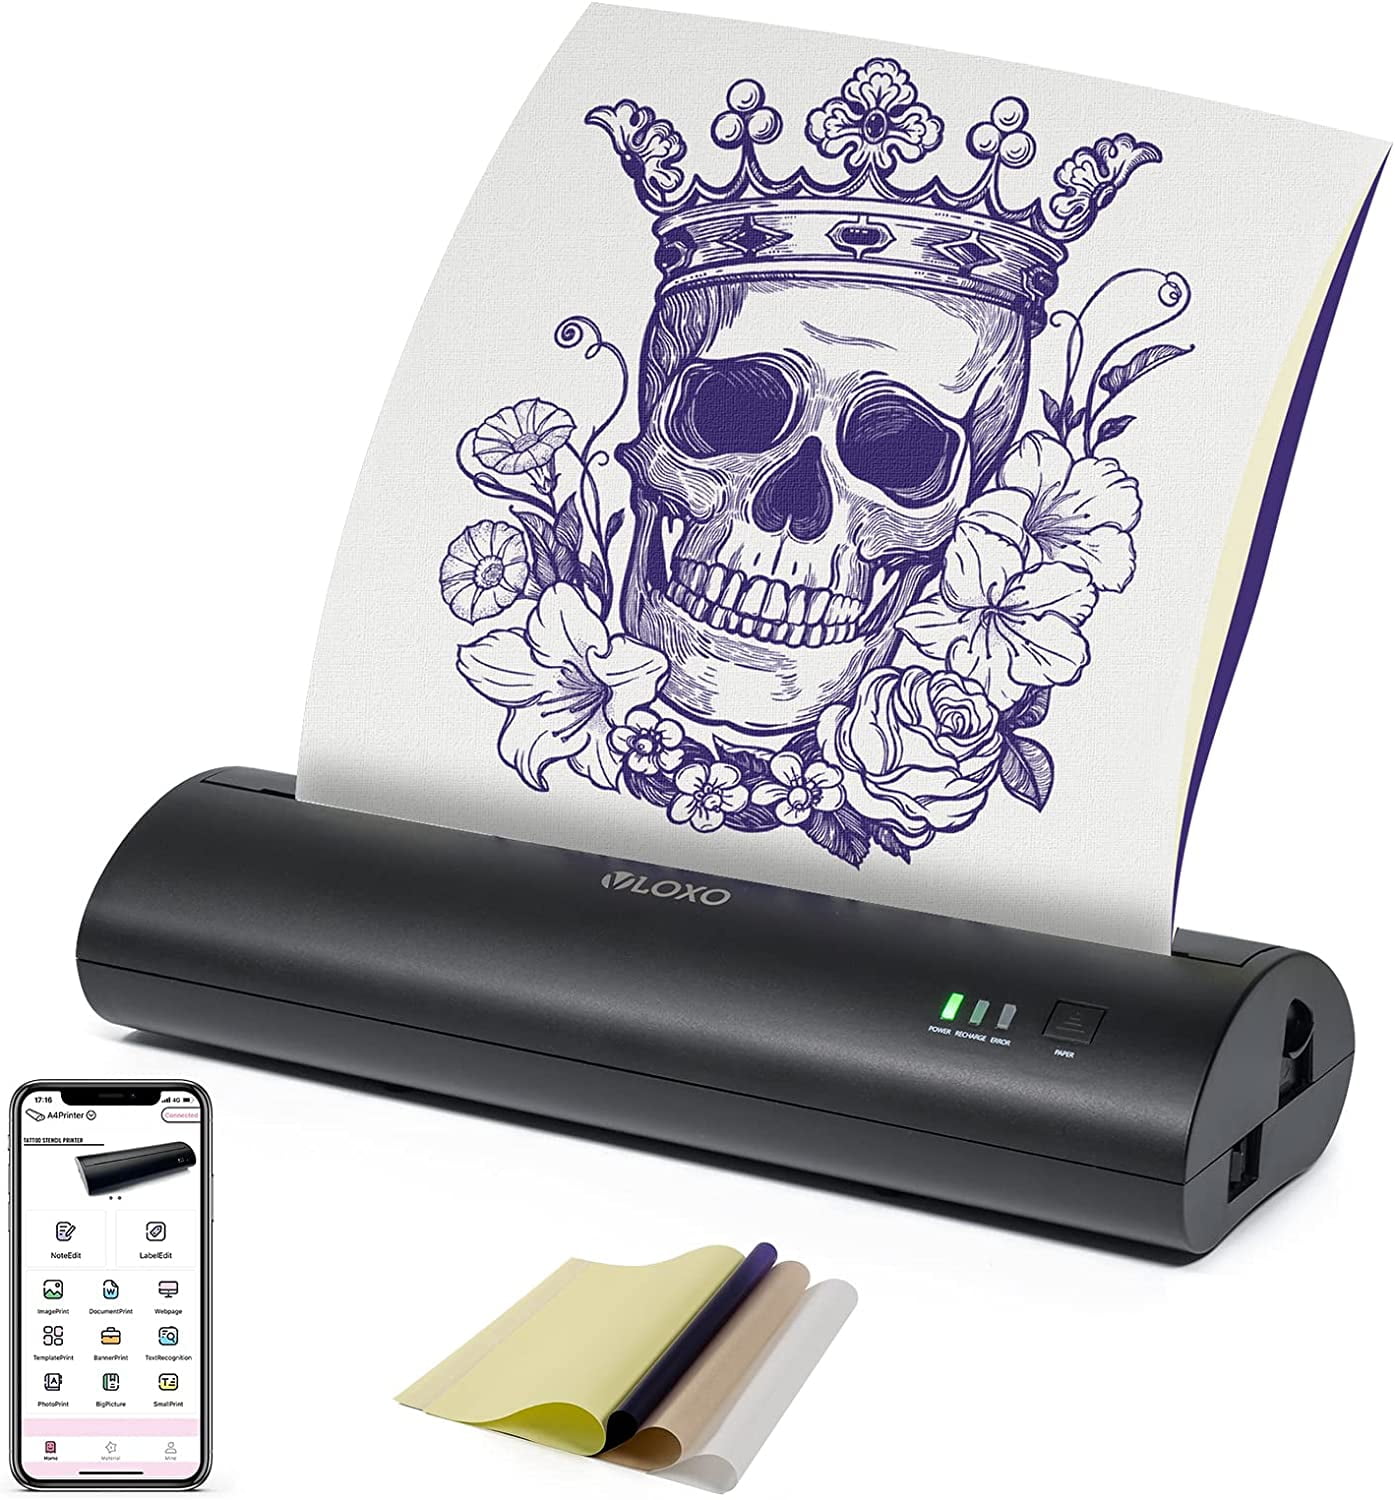 Tattoo Transfer Machine Tattoo Printer Drawing Thermal Stencil Maker Copier  For Tattoo Transfer Paper Carbon Papier Supply - Tattoo Stencils -  AliExpress